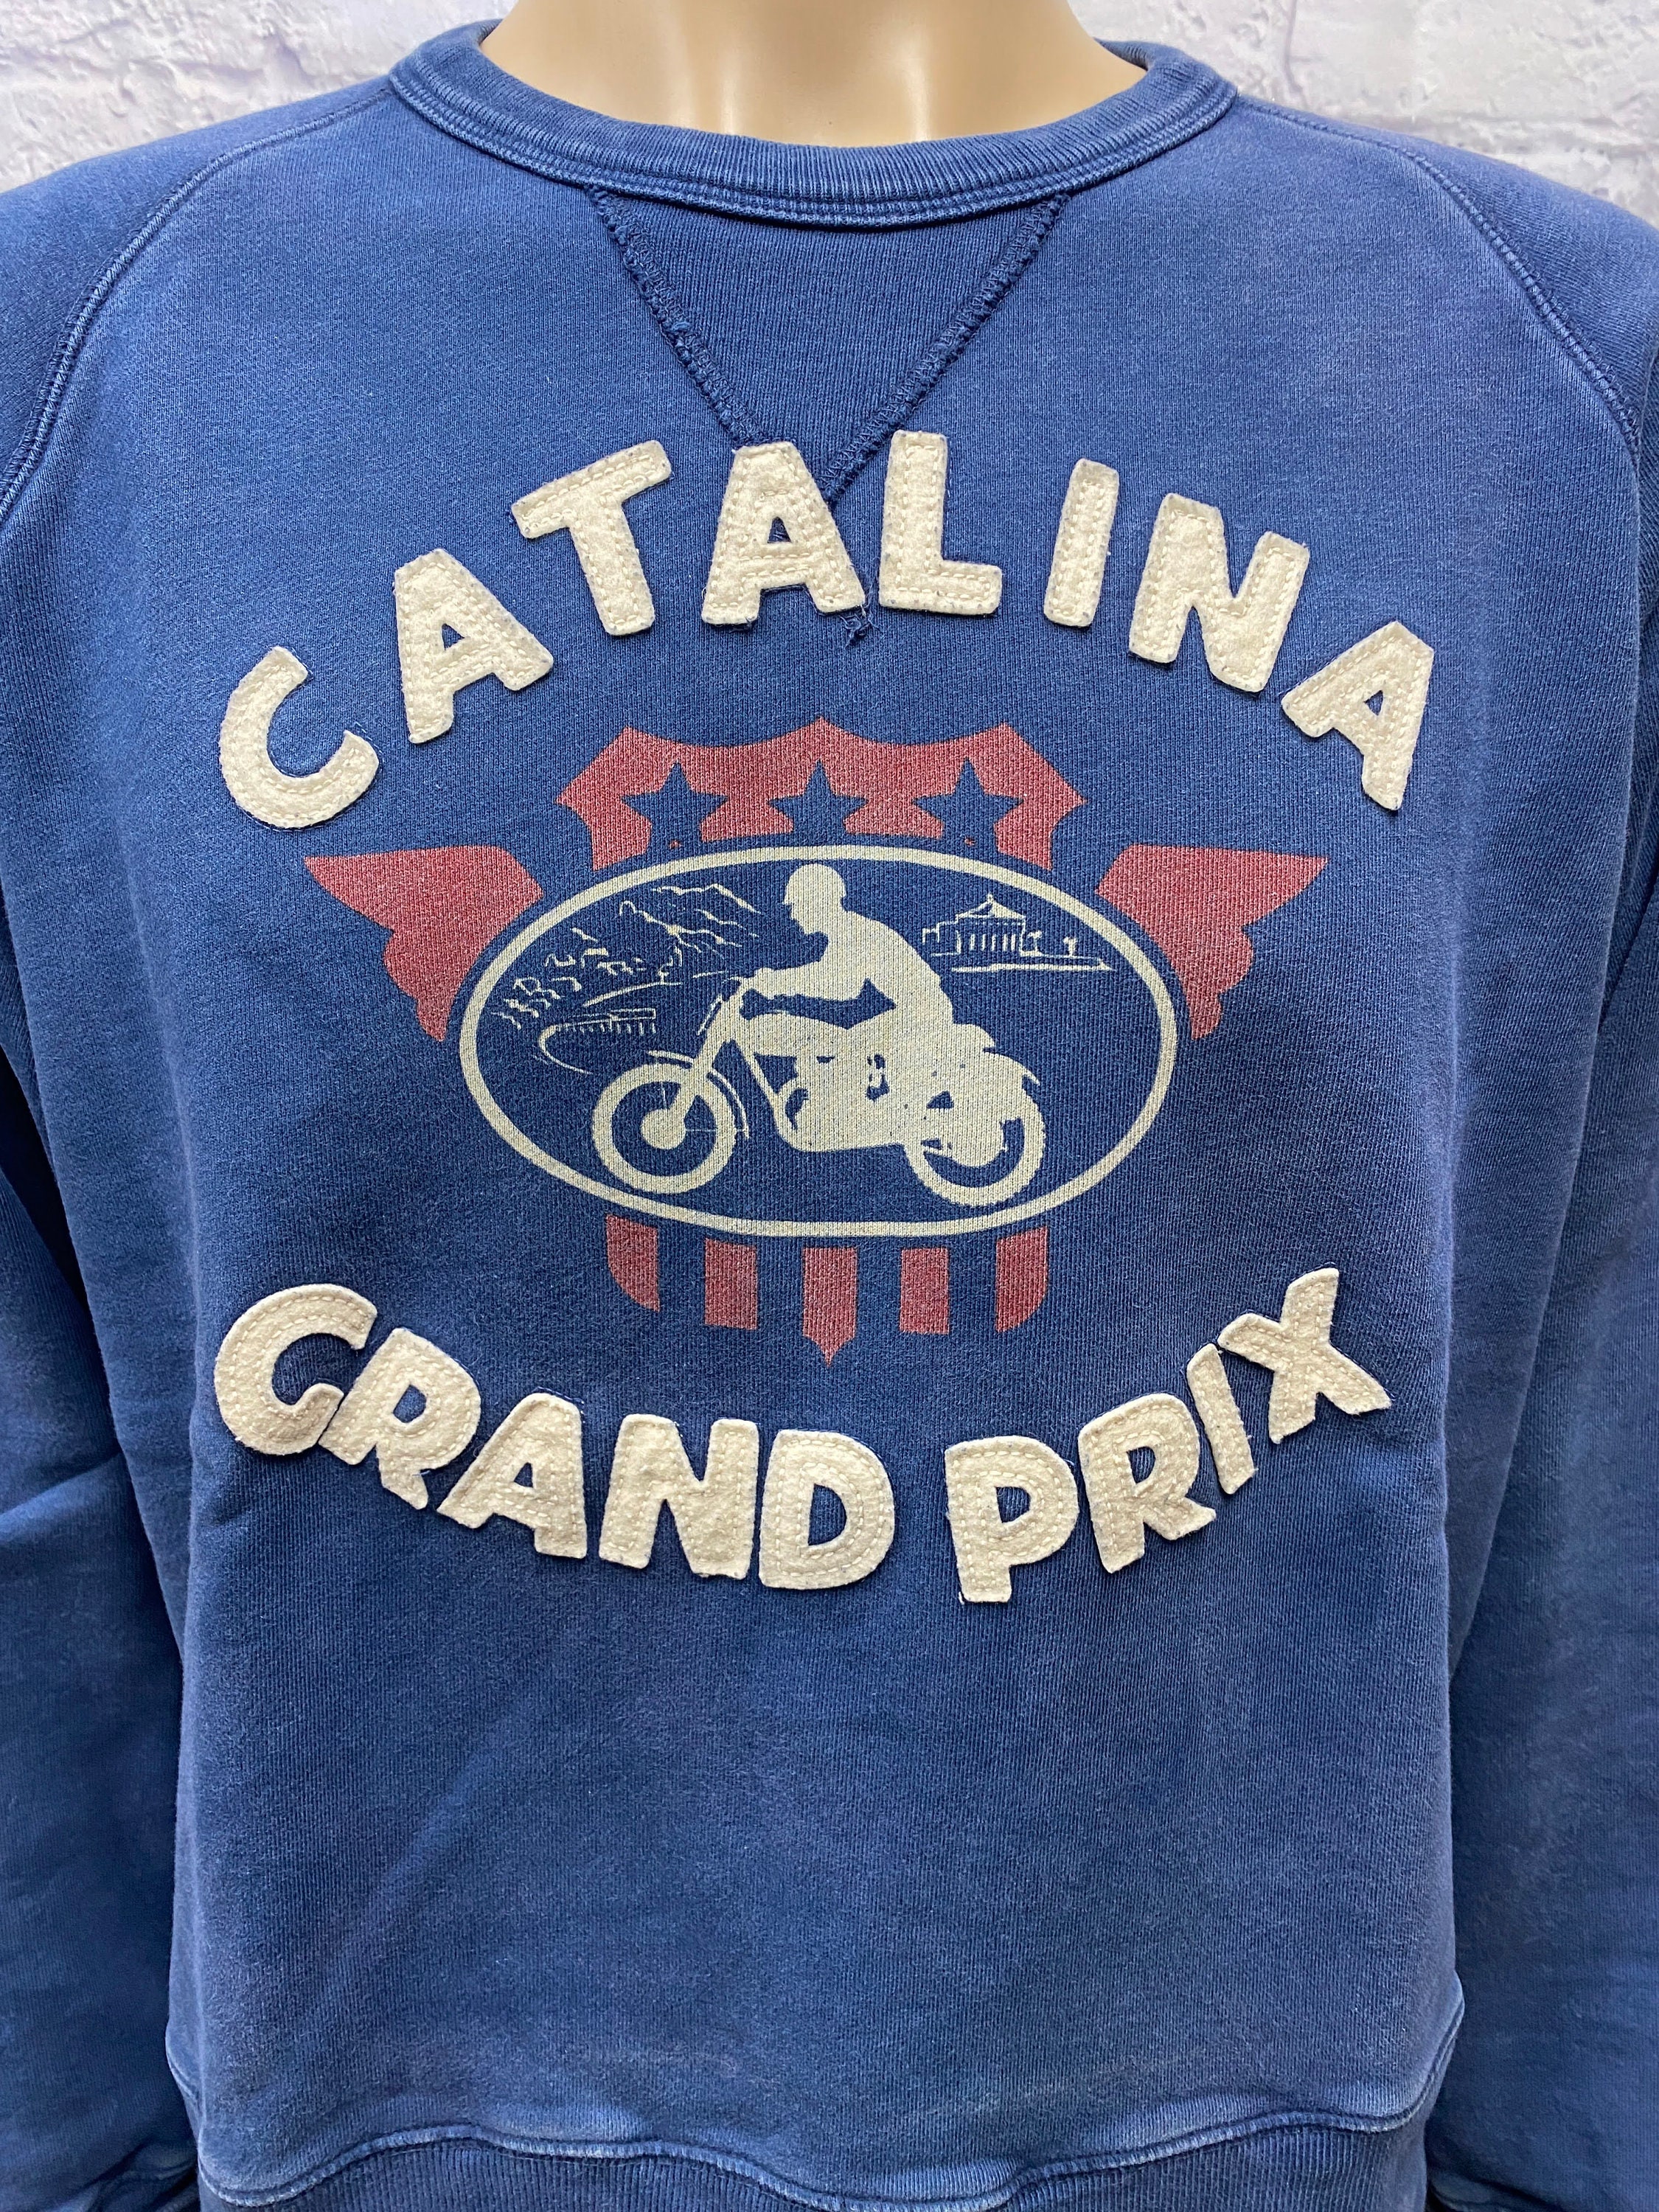 Catalina Grand Prix Vintage Hoodie Sweatshirt, Custom prints store